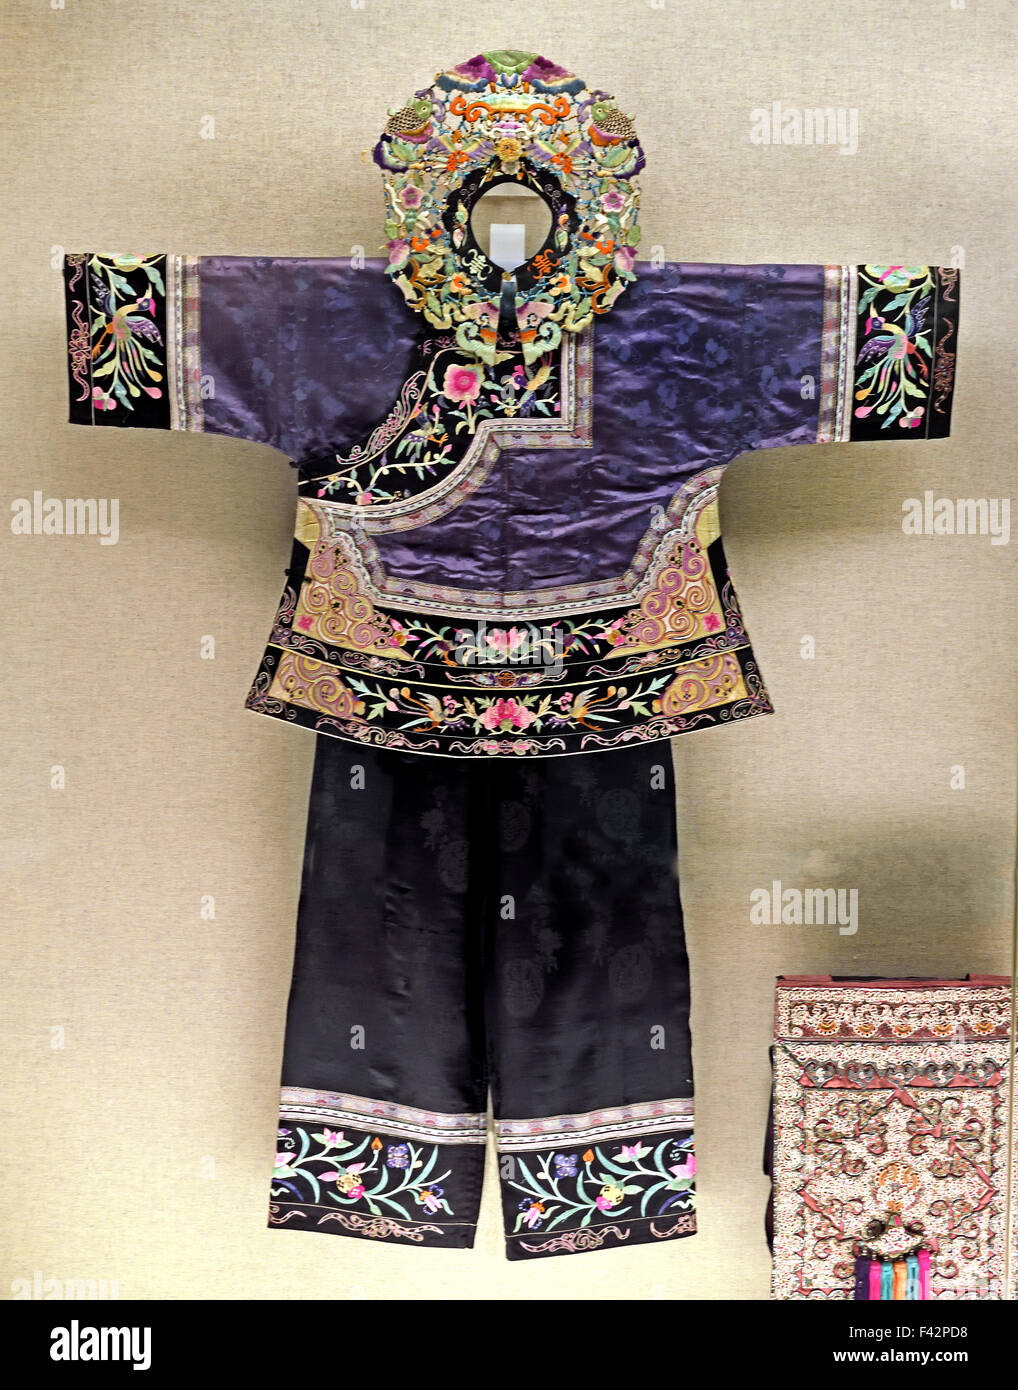 Woman's outfit (brodée d'oiseaux et de fleurs ) motif Songtao Tujia, Guizhou 1950 Musée de Shanghai de l'ancien art chinois Chine Banque D'Images